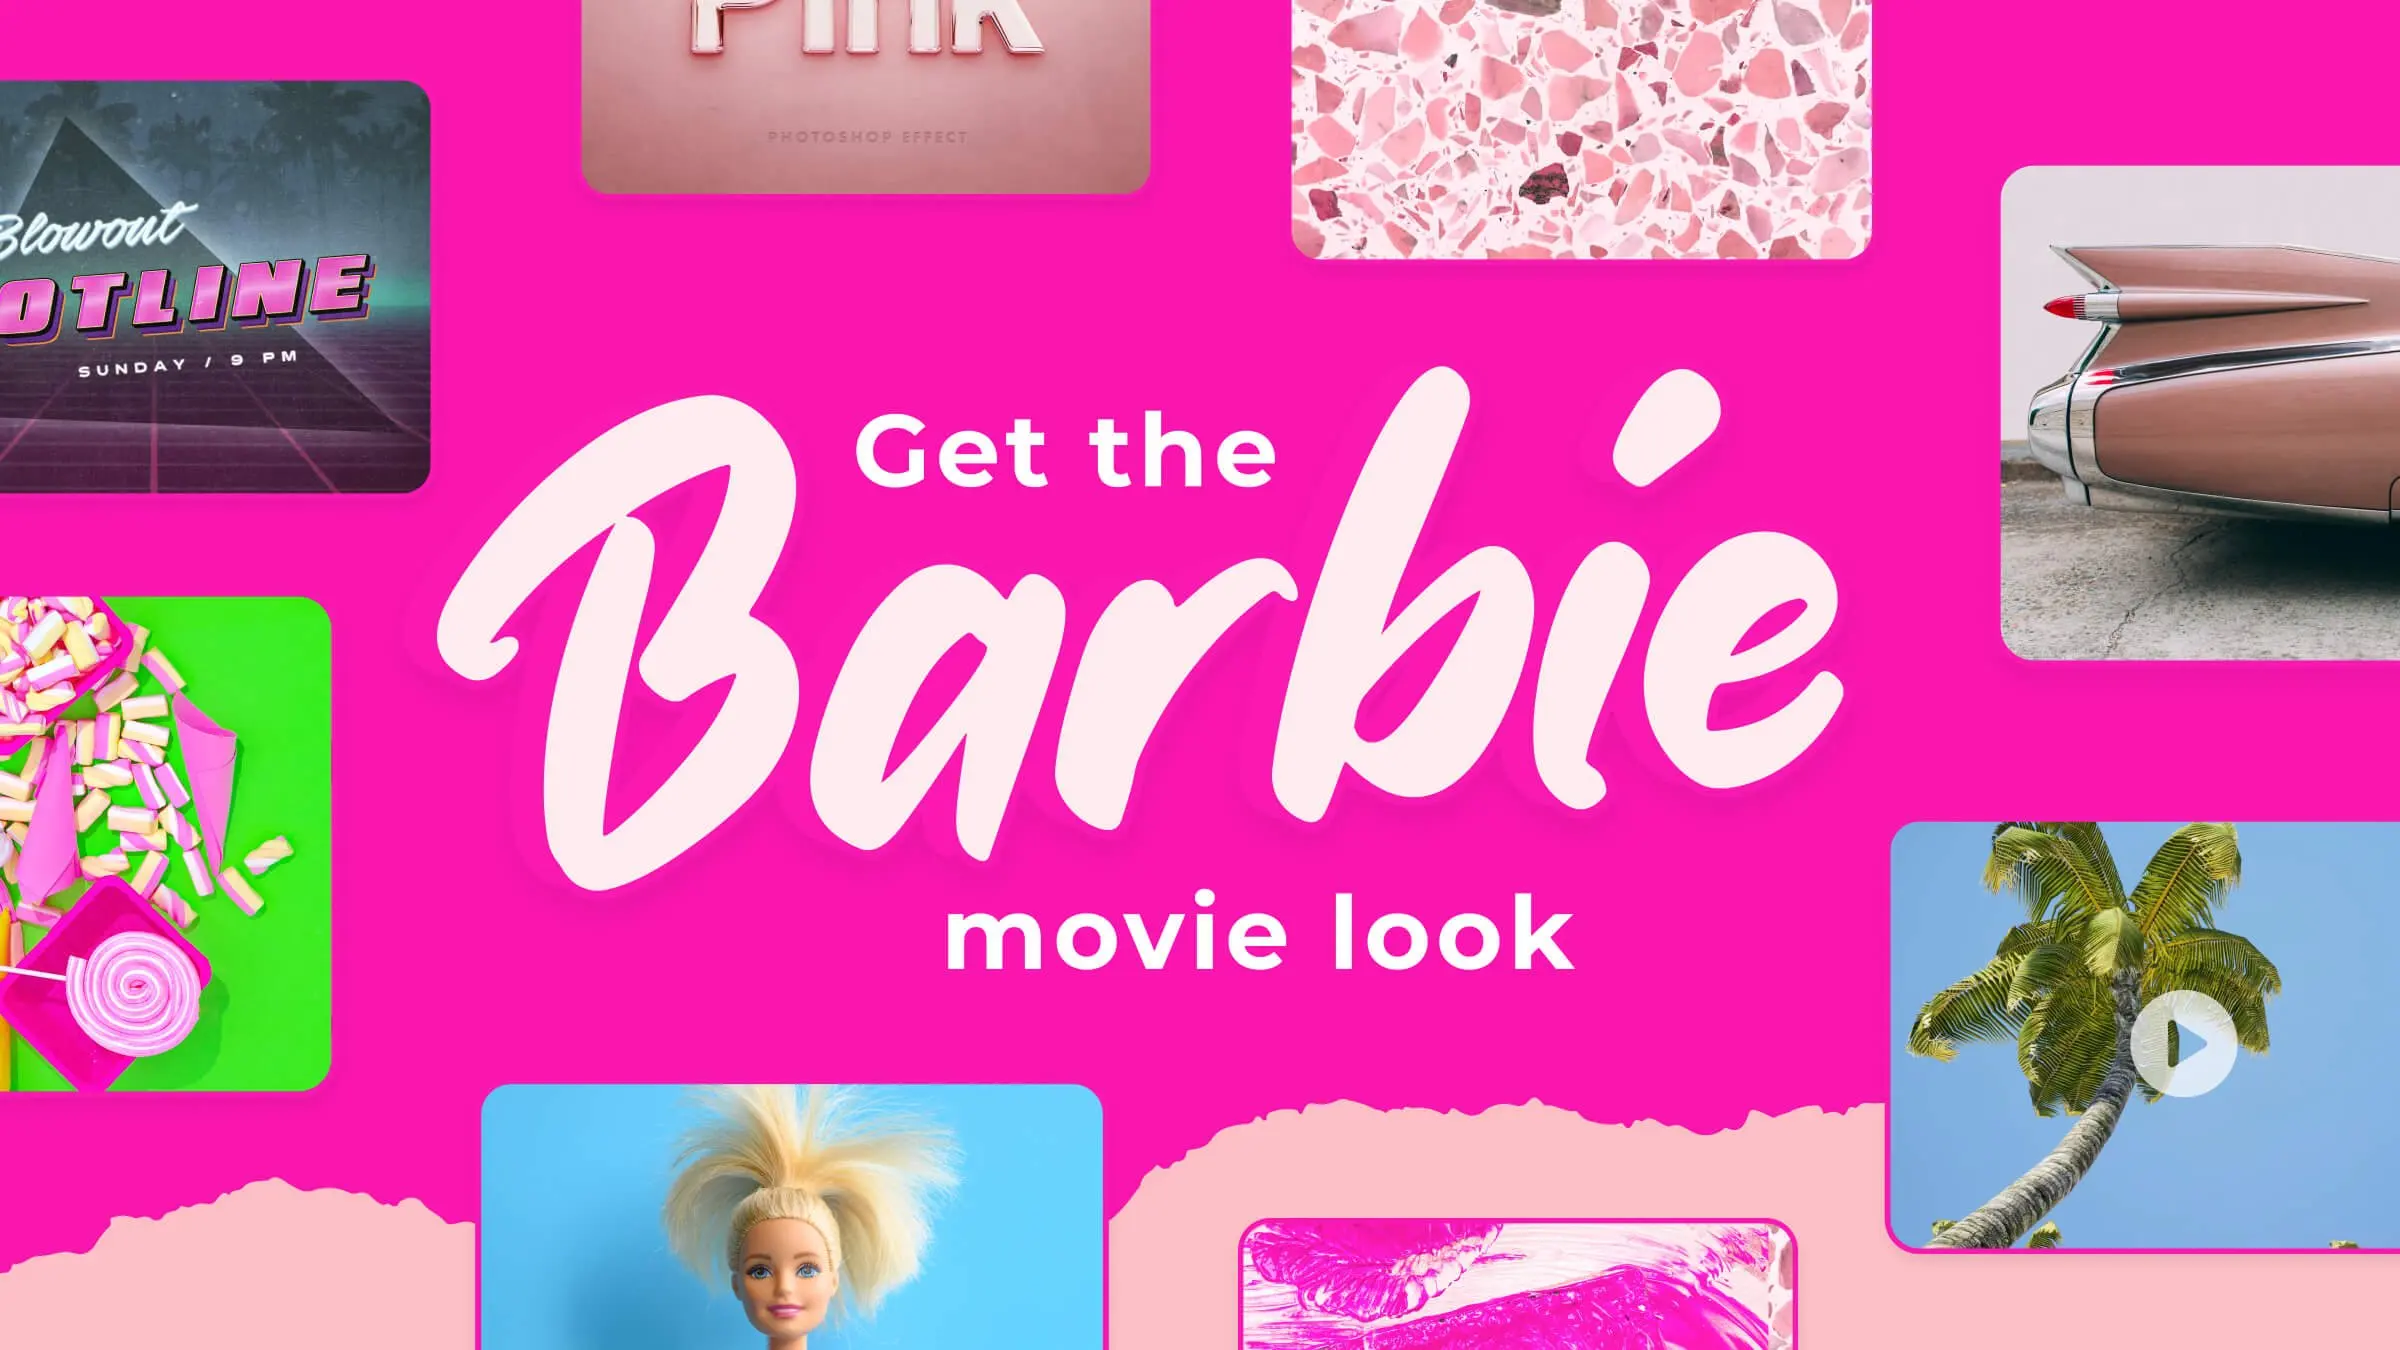 Get the barbie movie look
